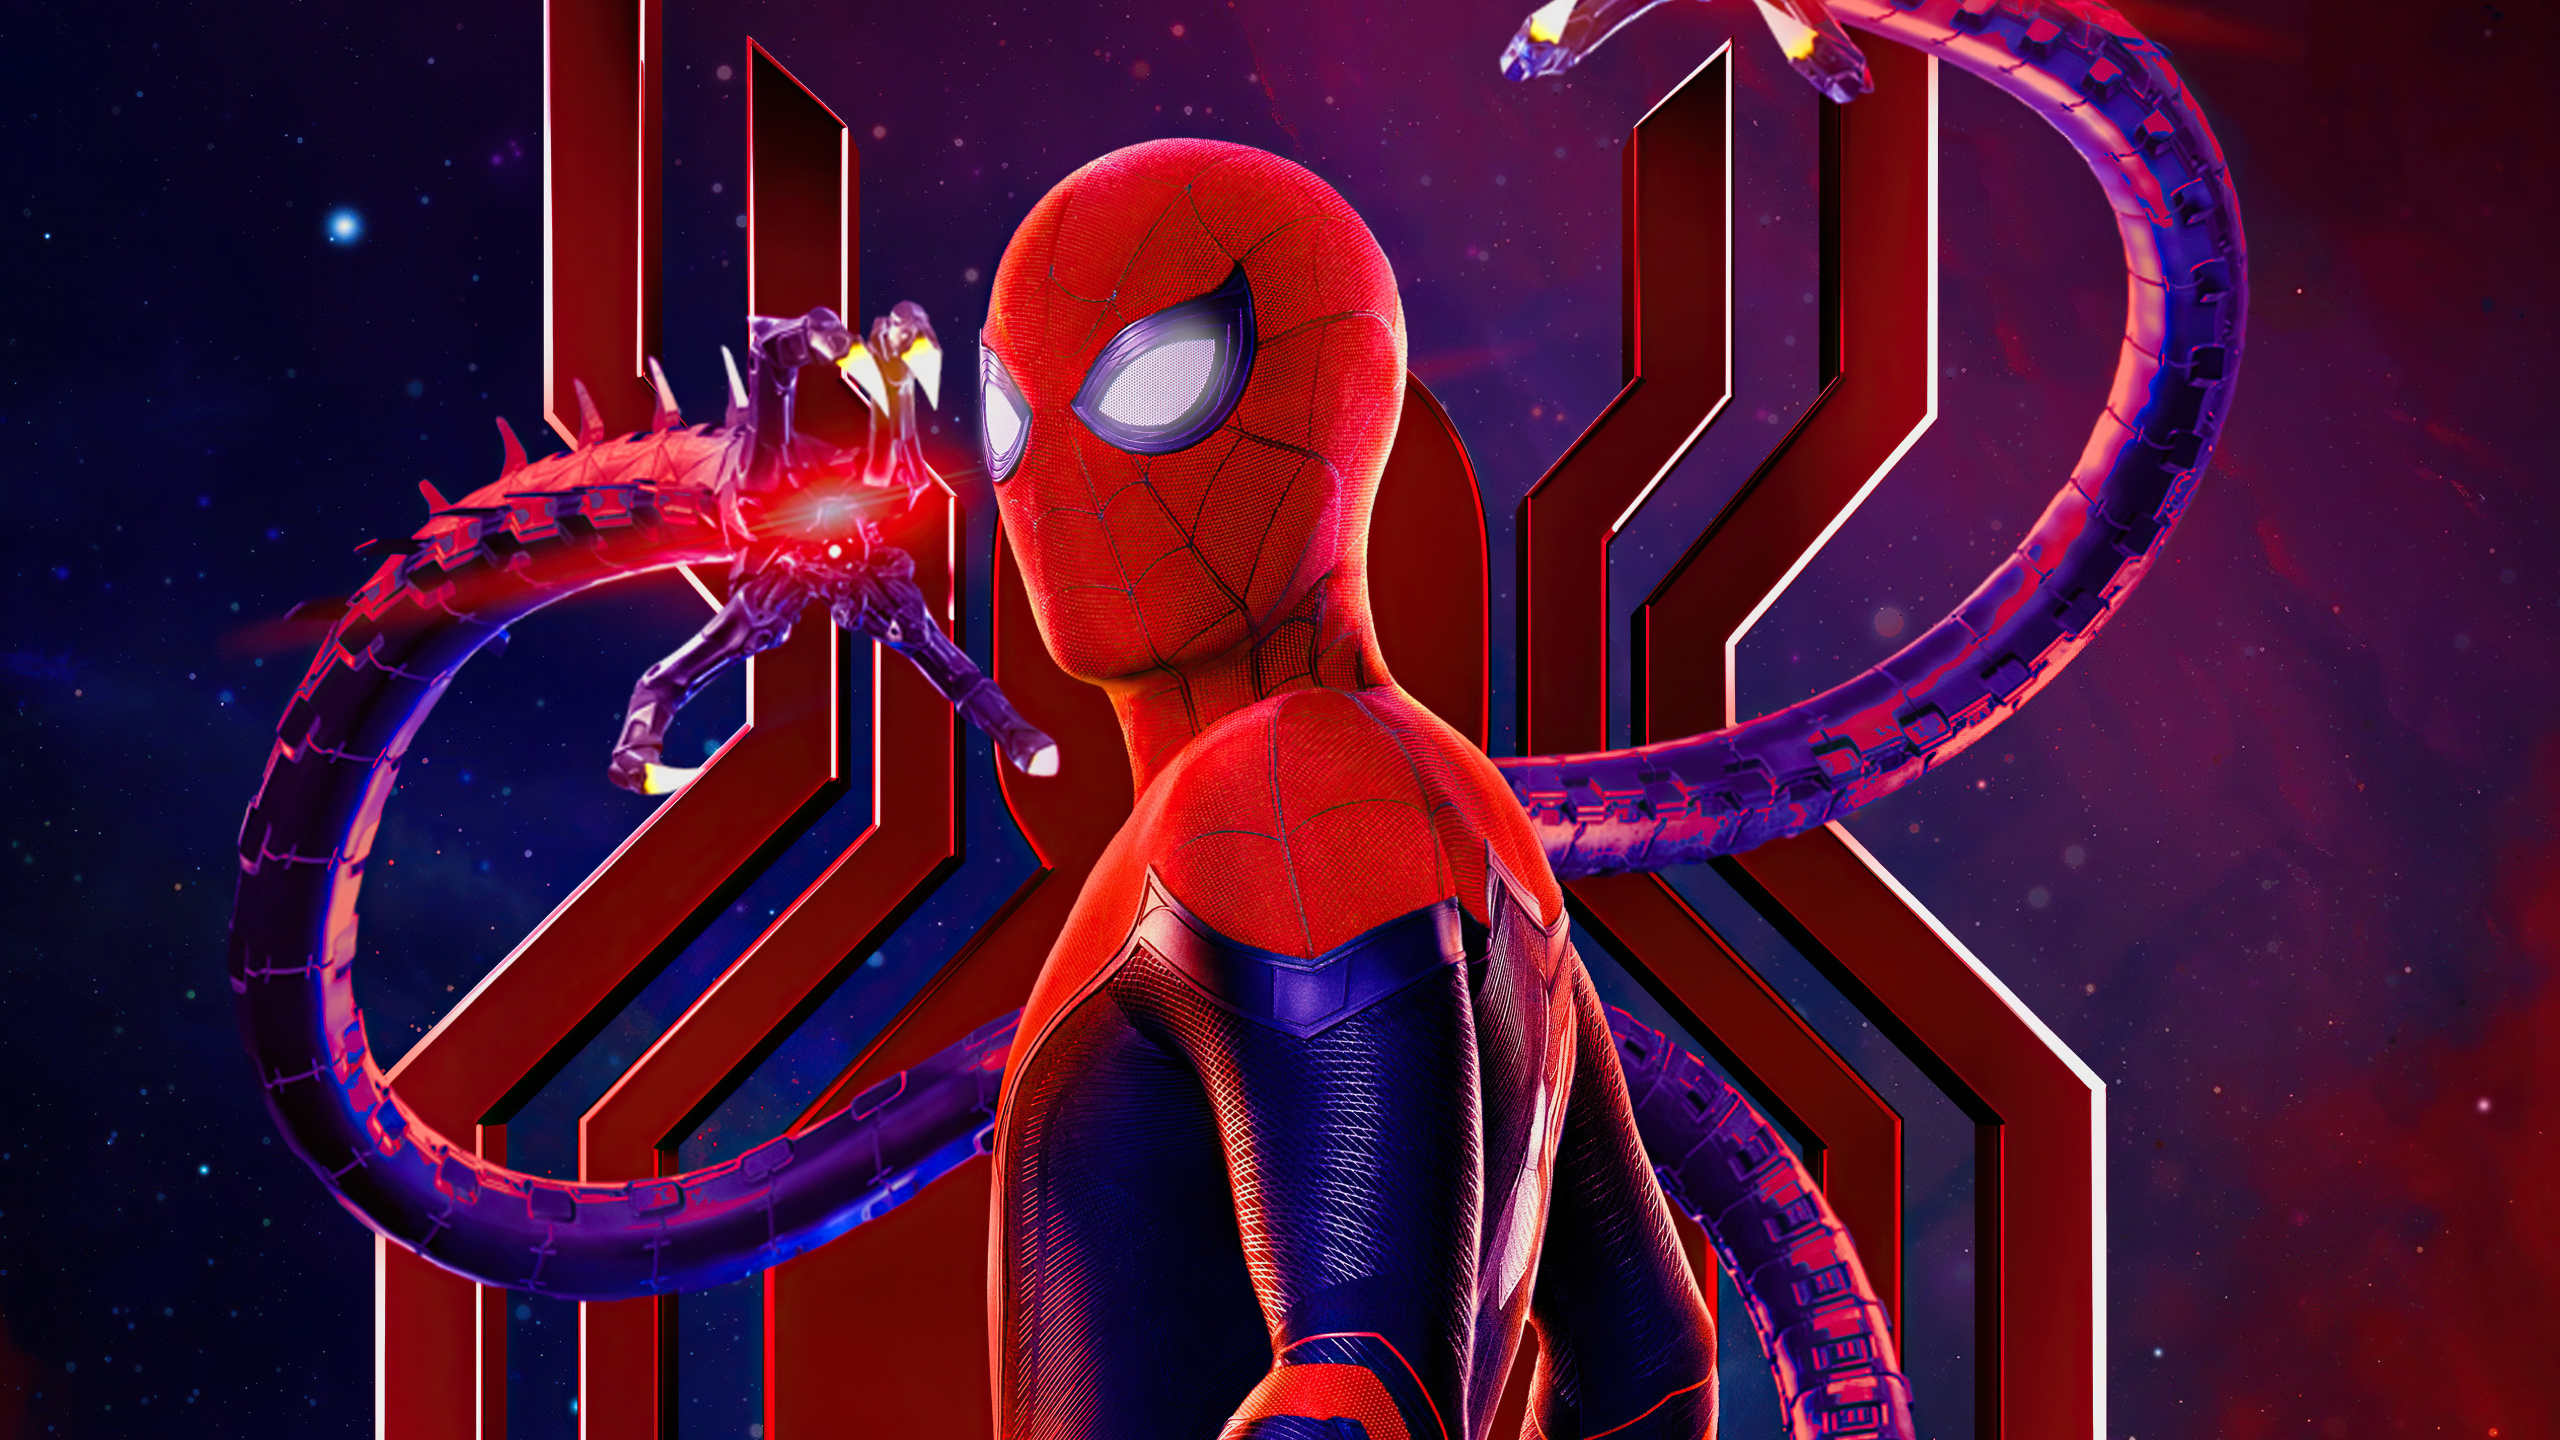 Spider-man: no Way Home, Spider Man Kein Weg Nach Hause Poster, Spider-man, Poster, Superhelden. Wallpaper in 2560x1440 Resolution